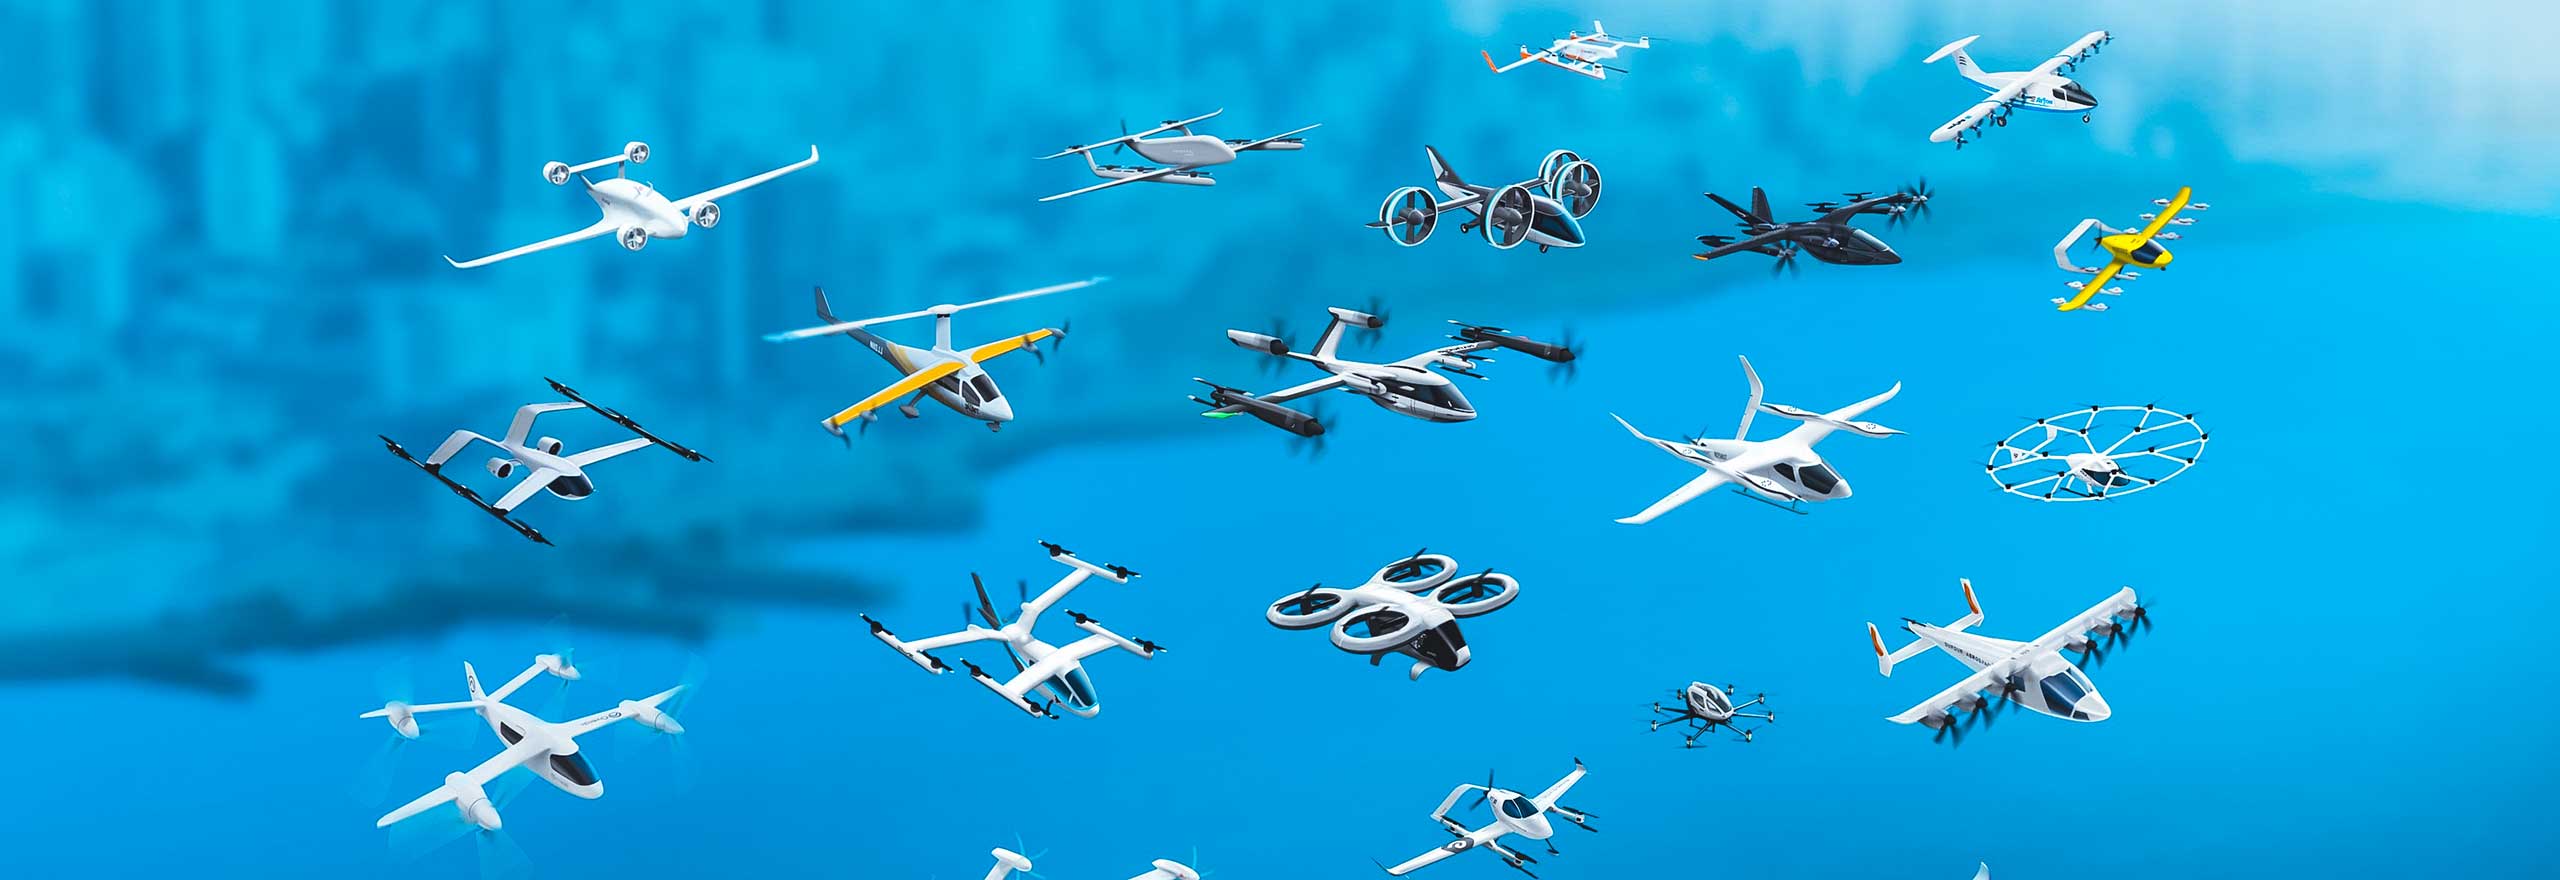 Diverse elektrische vertikale Start- und Landeflugzeuge (eVTOL) und Drohnen im Flug nach einer Simulation der Strukturanalyse in der Entwicklung